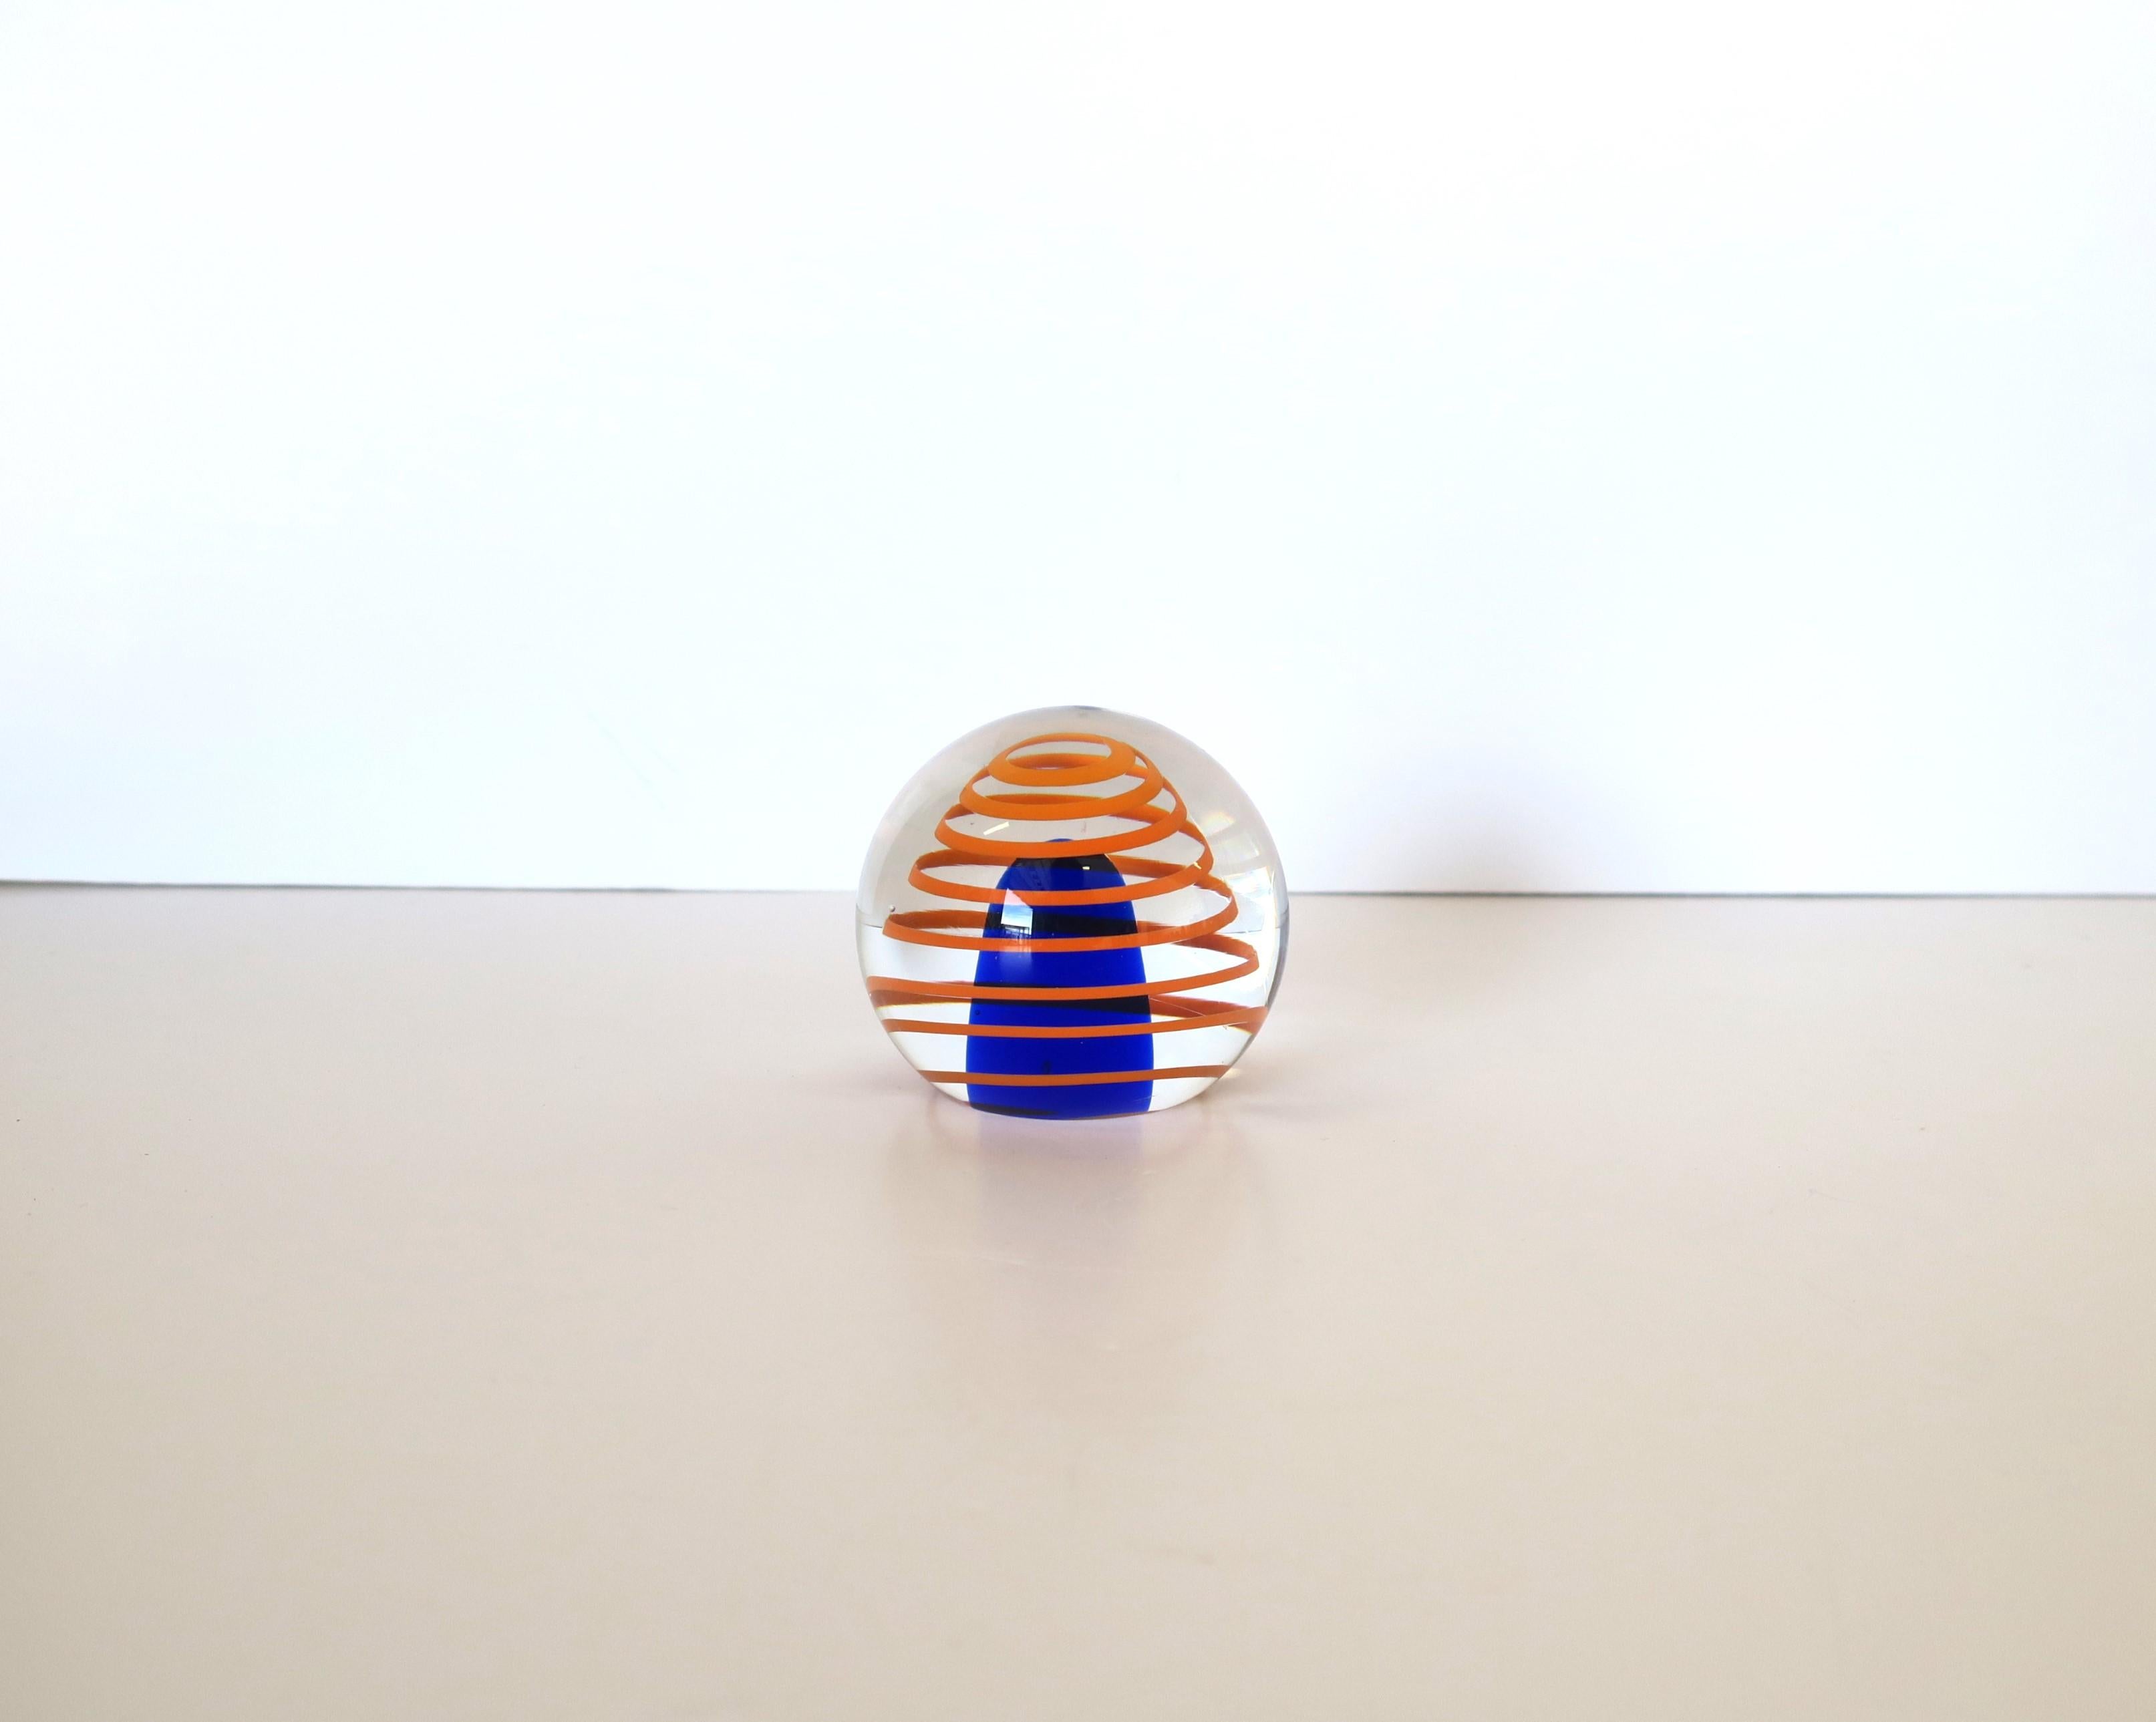 Très bel objet décoratif de type presse-papier en verre d'art orange et bleu de Beránek Glassworks, vers le milieu du XXe siècle, Tchécoslovaquie. La marque du marqueur est gravée sur le fond, comme le montre la dernière image. Dimensions : 2,25